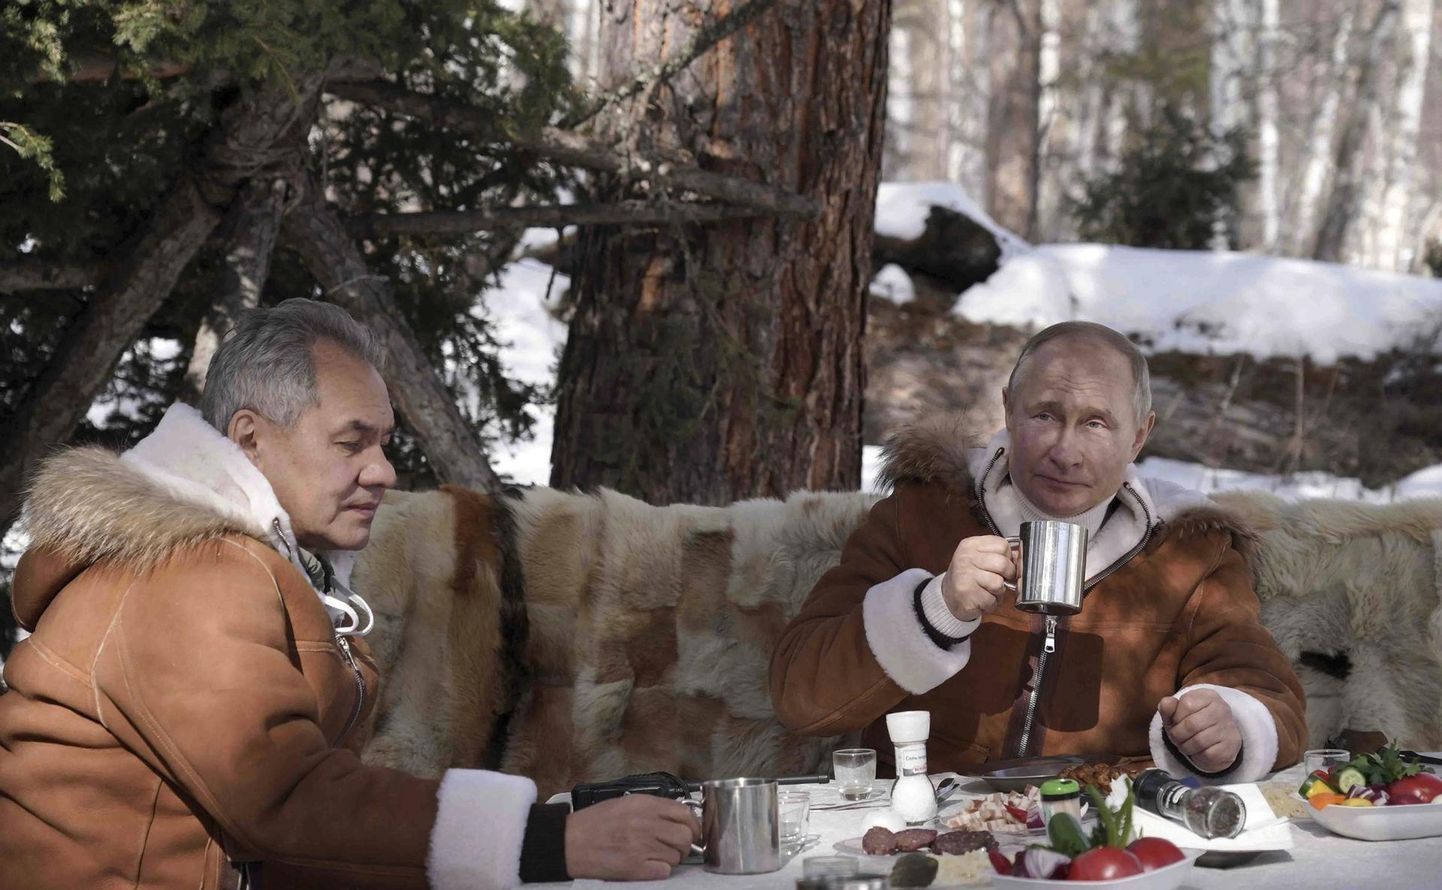 Venemaa president Vladimir Putin (pildil paremal) võib mureta olla - headel aegadel kogutud varud aitavad vähemalt esialgu lääneriikide sanktsioonid üle elada. Pildil võtab riigipea koos kaitseminister Sergei Šoiguga pruukosti mullu märtsis Siberi taigas.